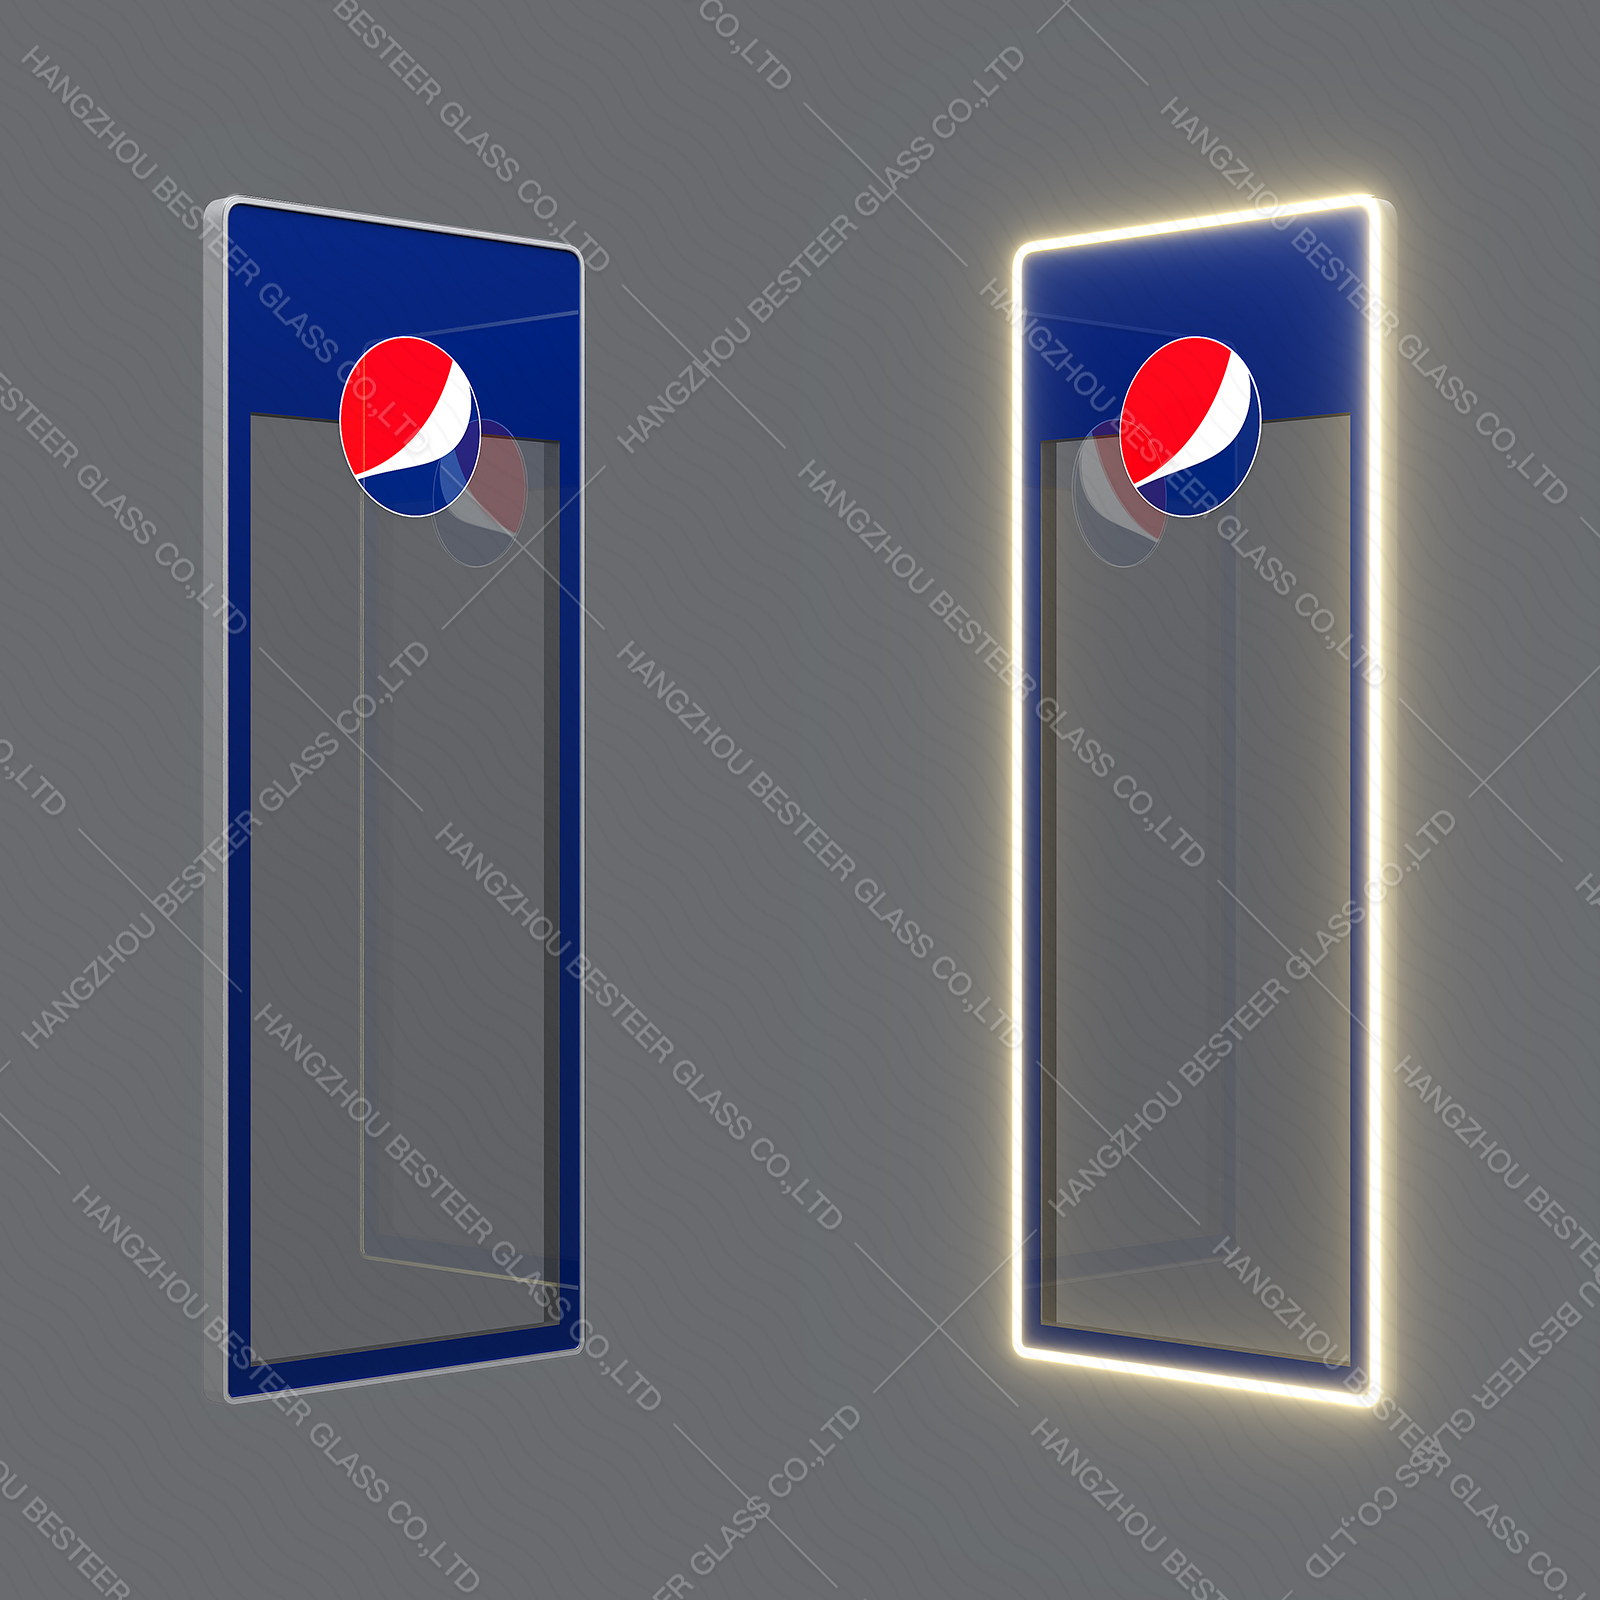 LED Display Glass Door for Beverage Refrigerator